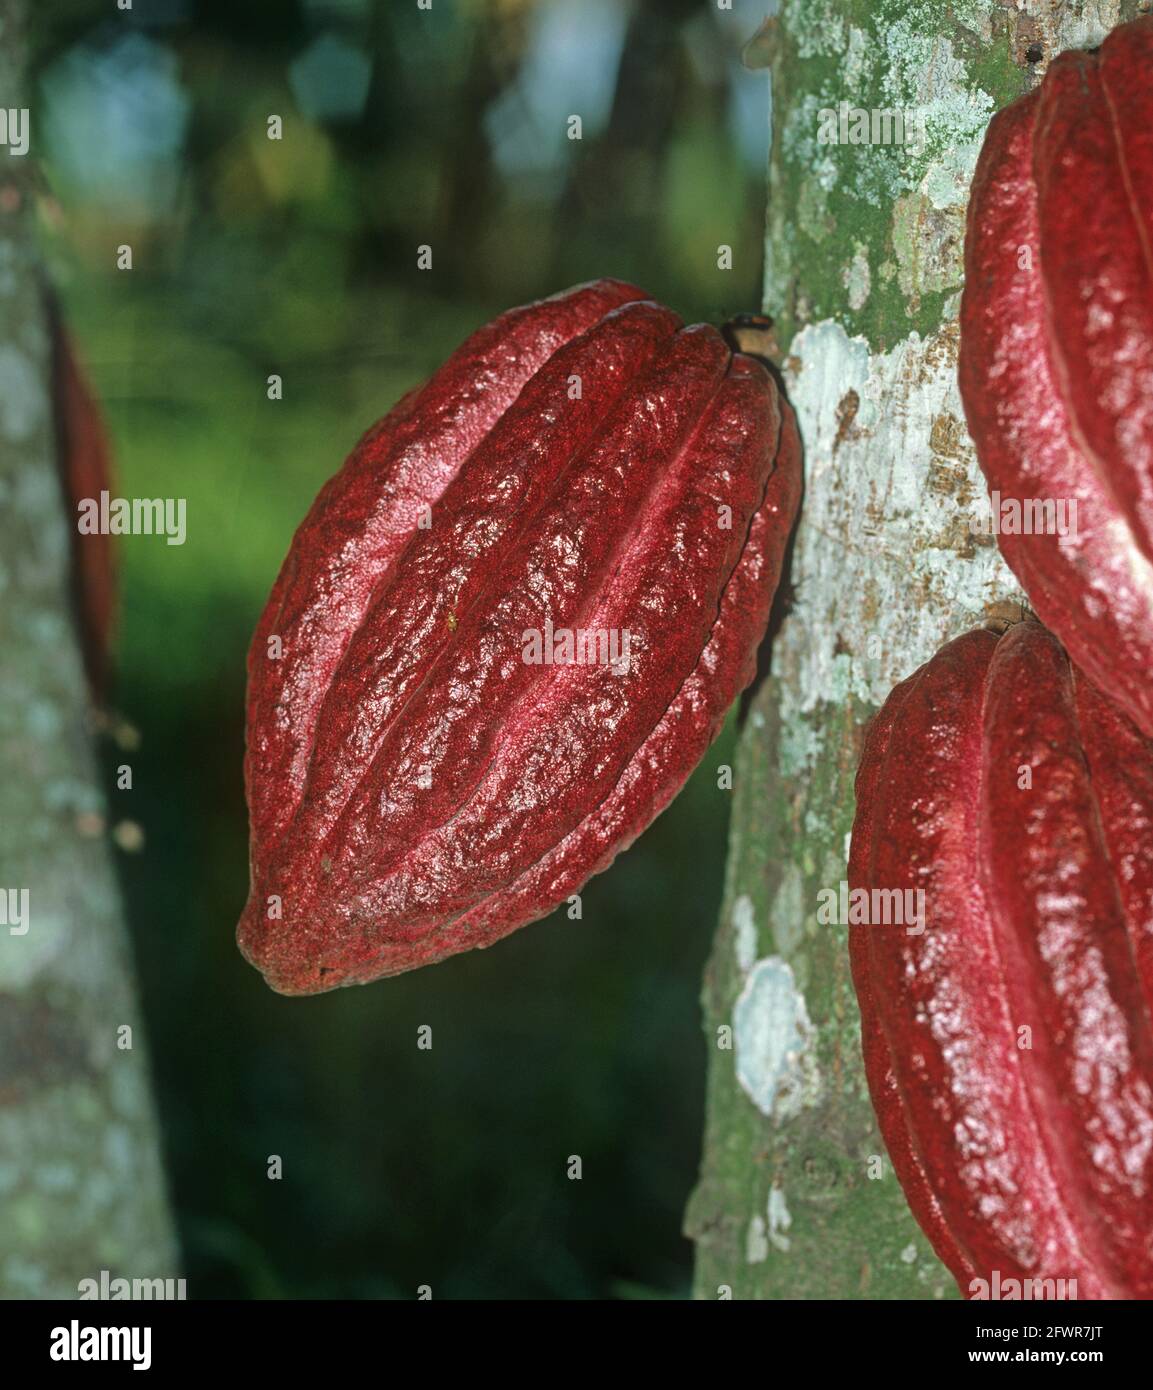 Reife Kakaoschoten (Theobroma cacao) Auf einem Baum in einer kolumbianischen Plantage in der Nähe von Cali Stockfoto